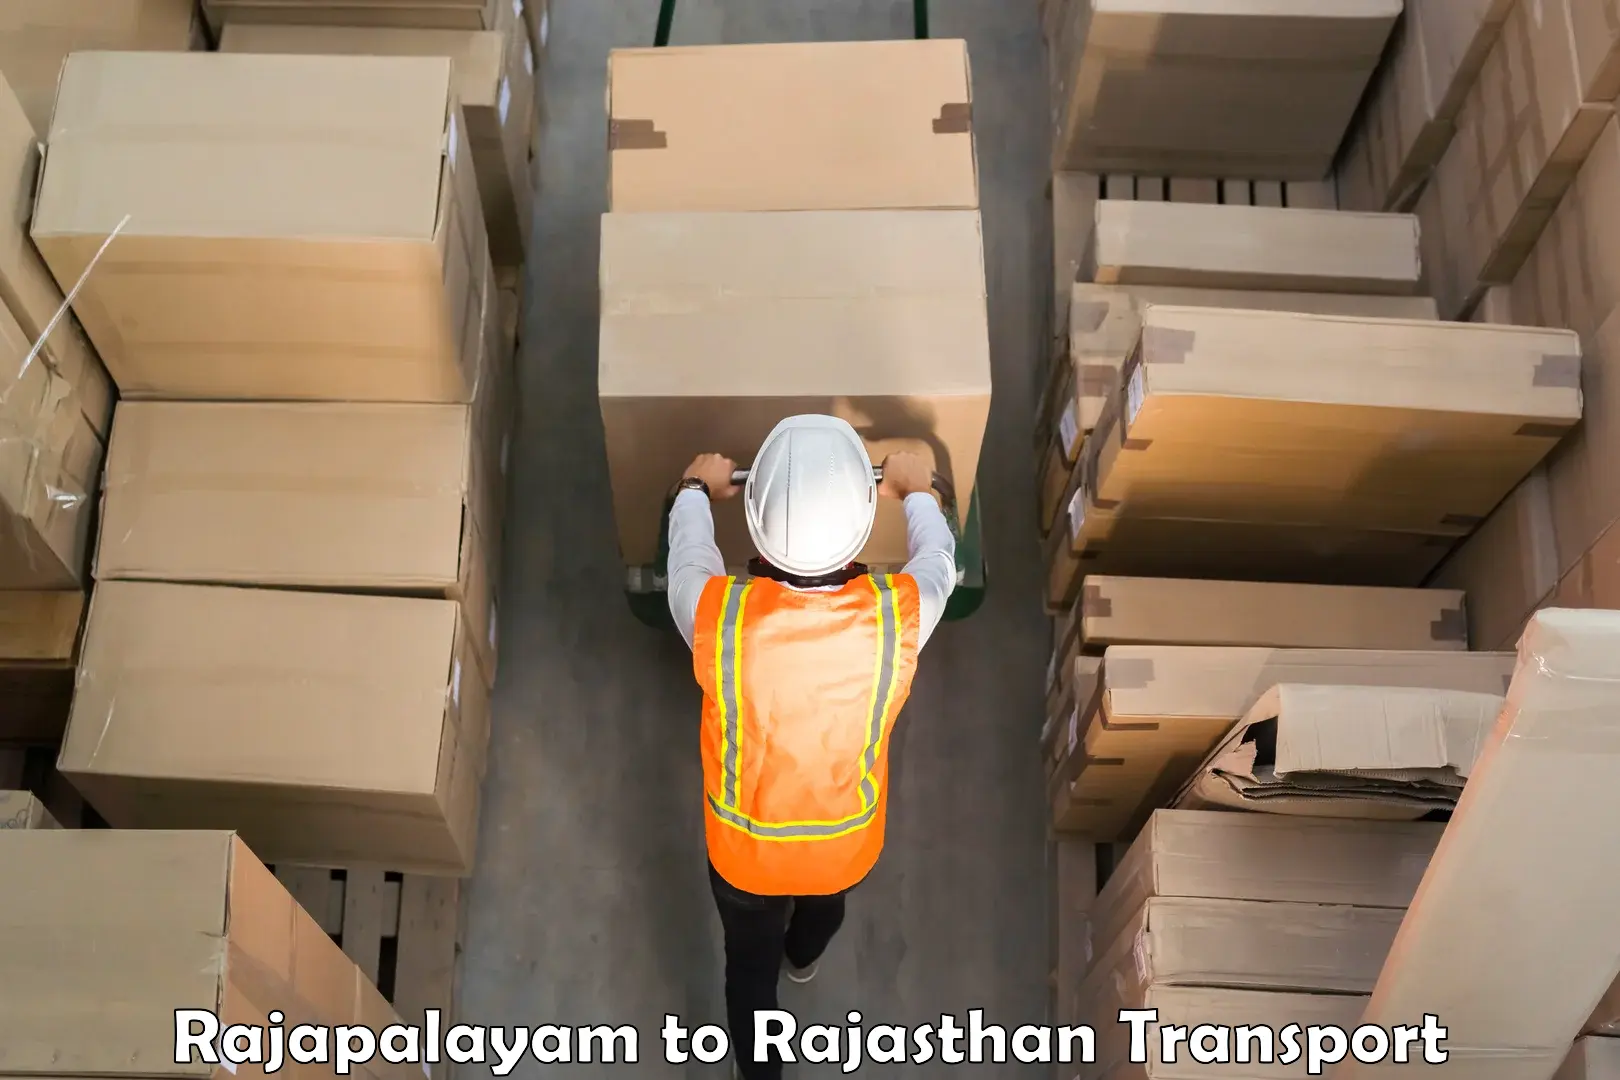 Furniture transport service Rajapalayam to Rajasthan